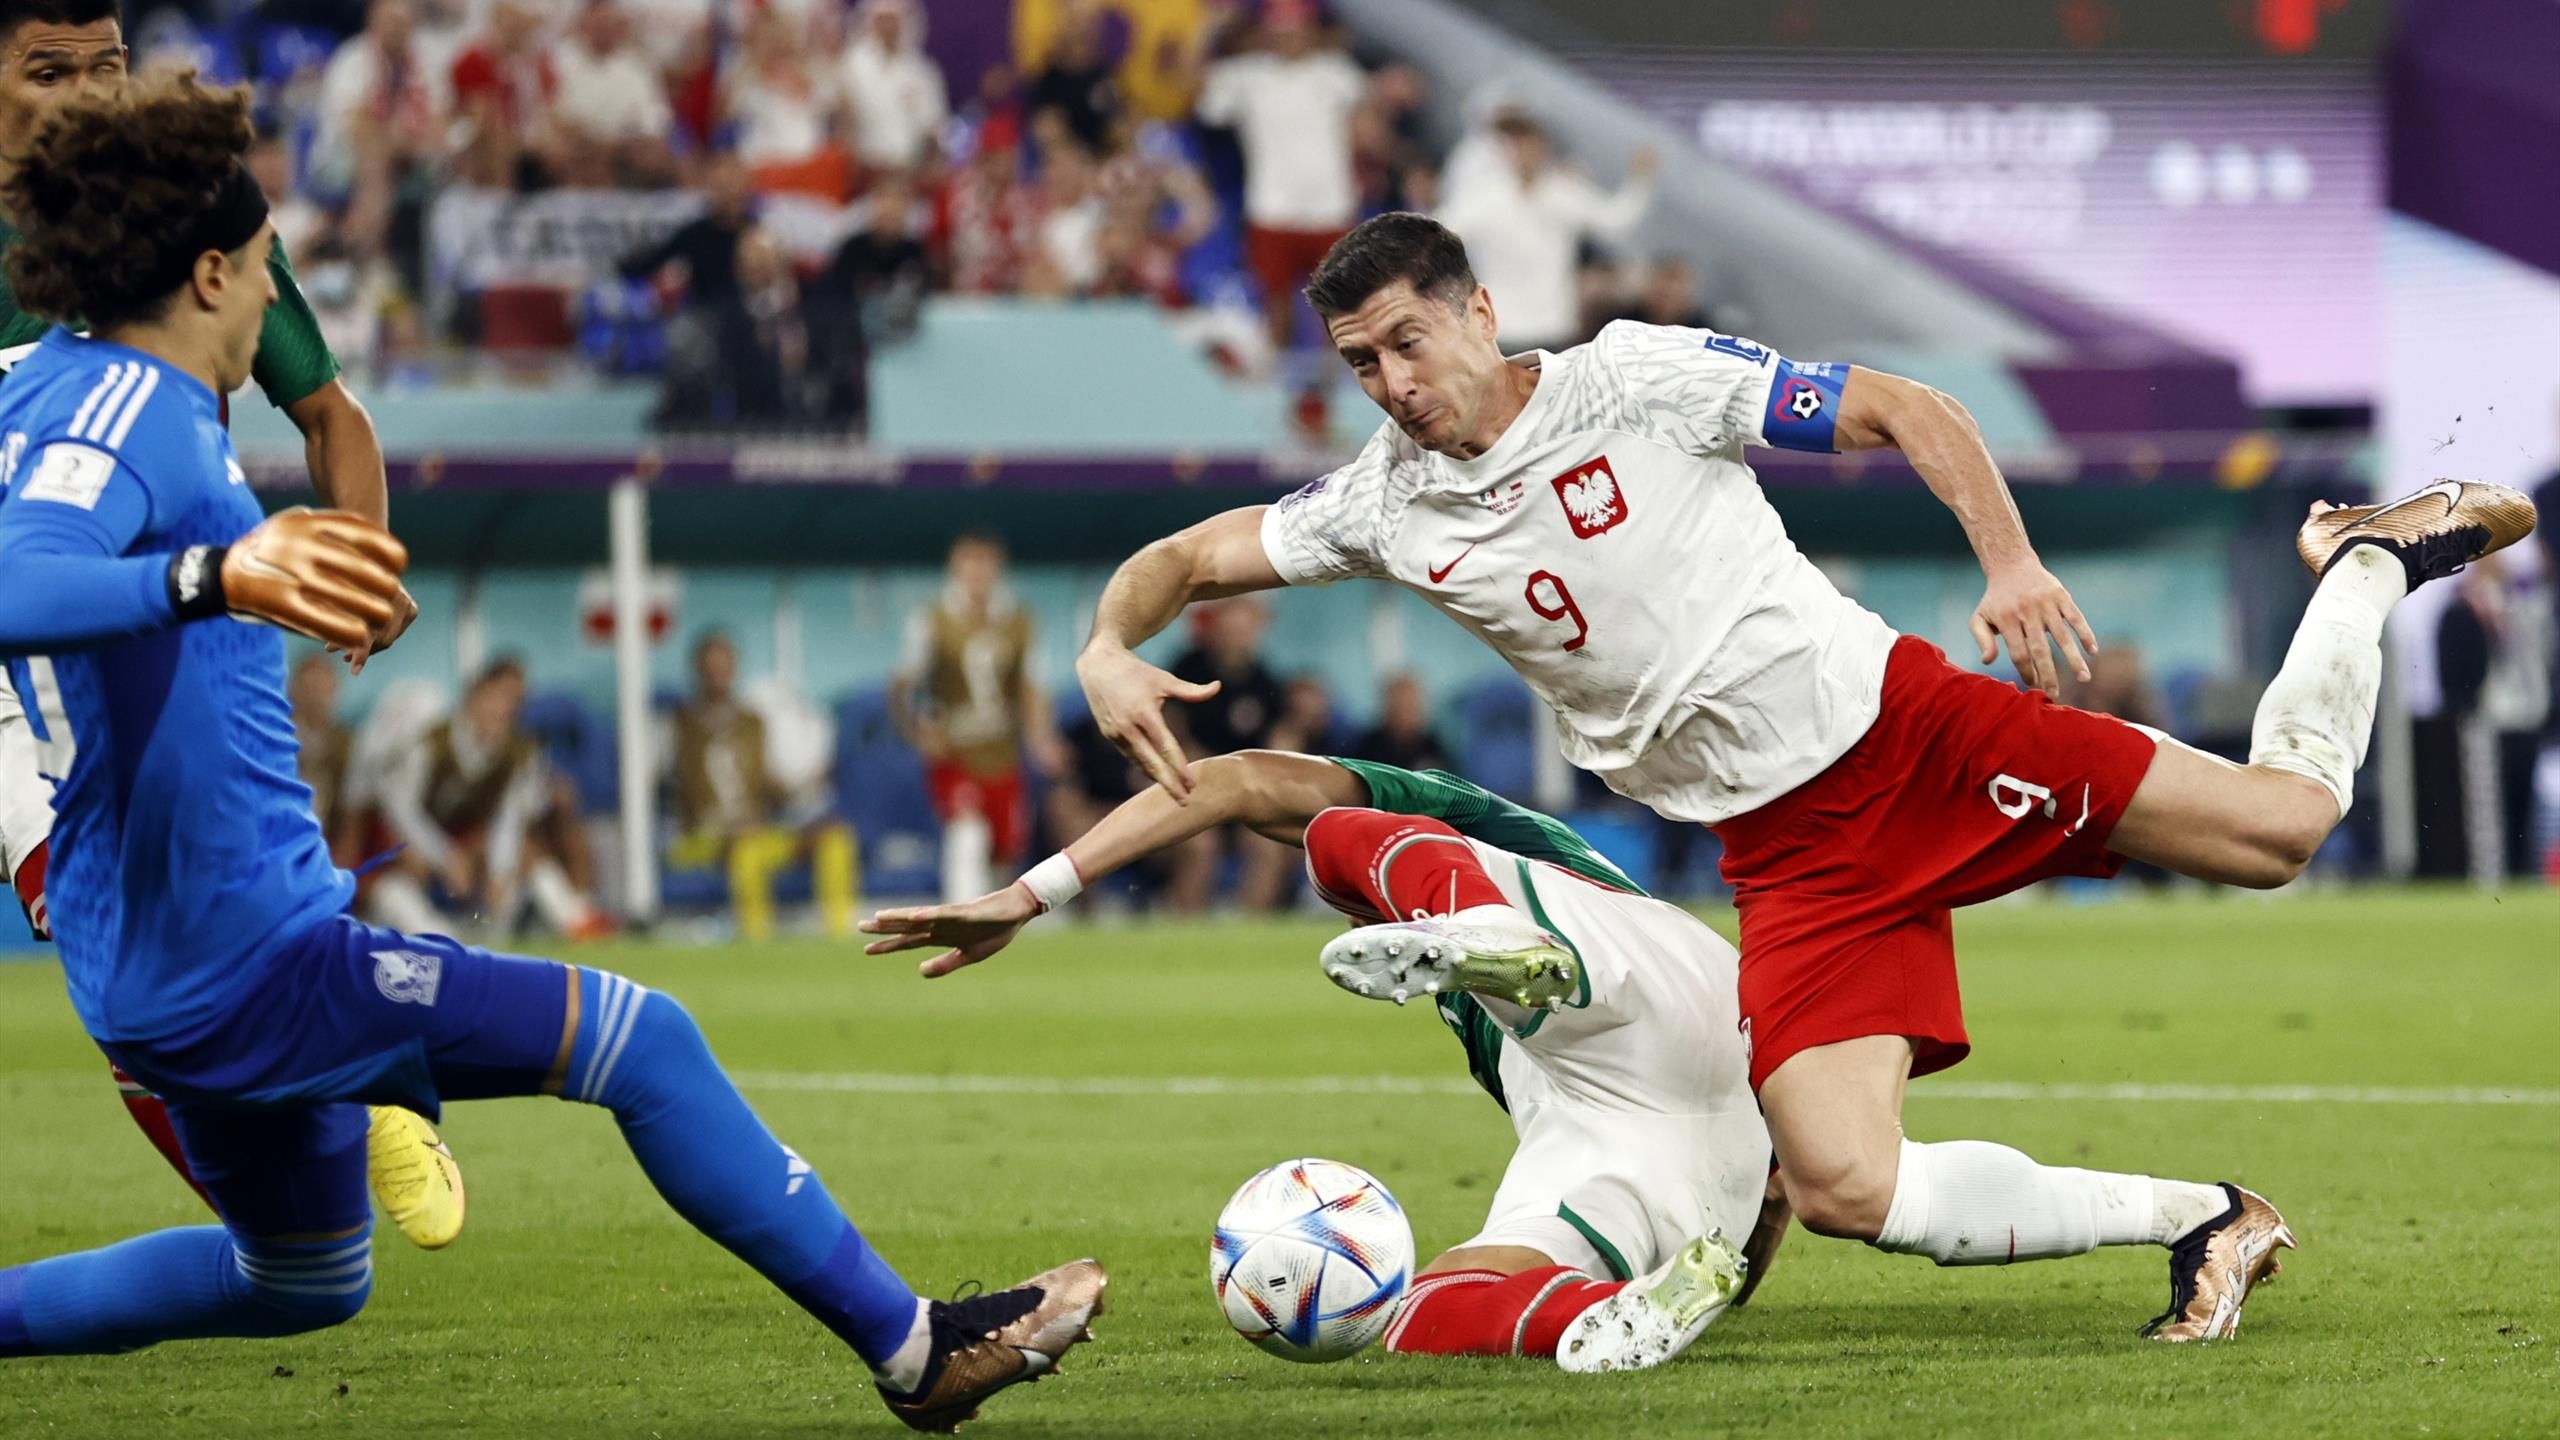 Puchar Świata |  Meksyk – Polska: Robert Lewandowski nie wykorzystuje rzutu karnego, remisując Polska i Meksyk